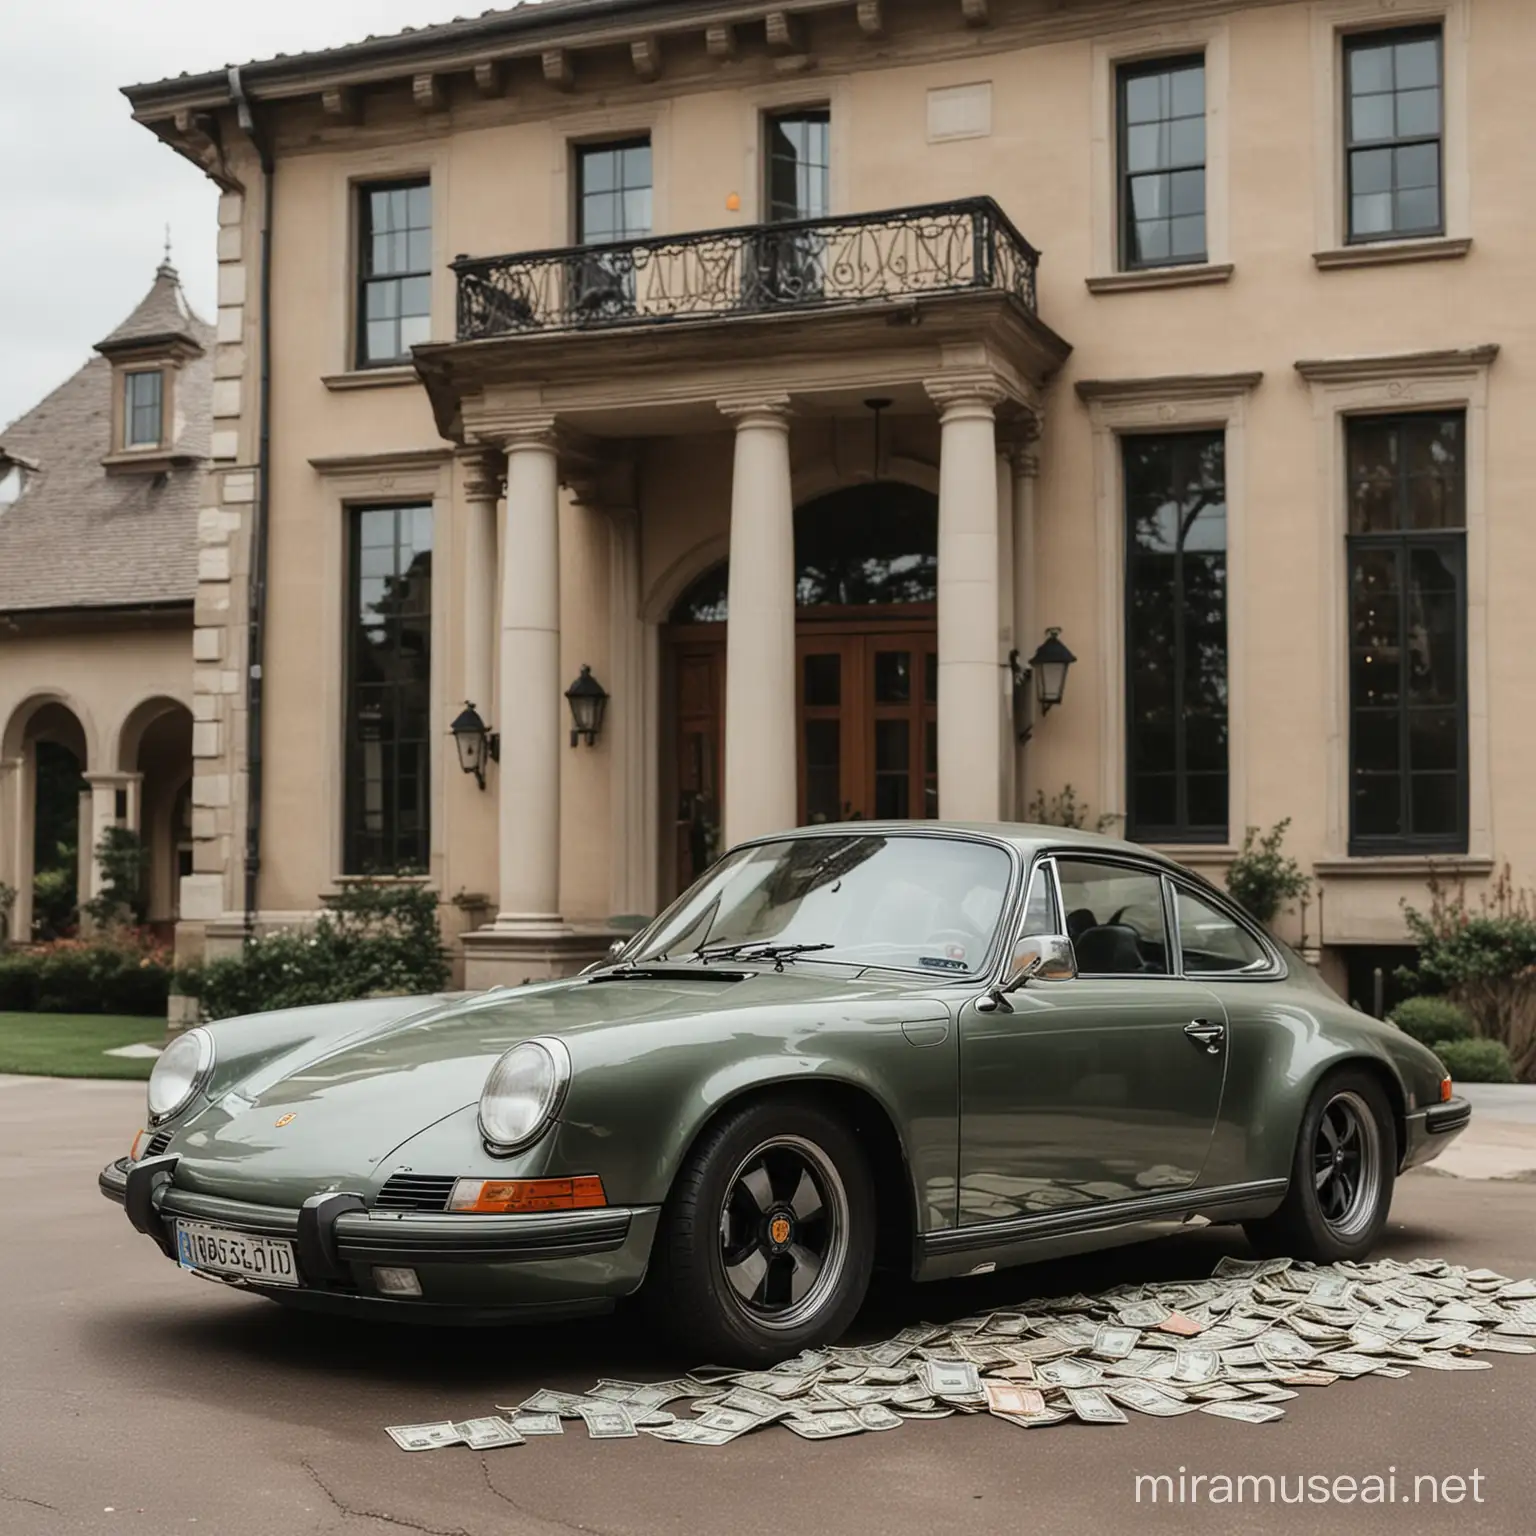 Vintage Porsche Parked Beside Luxurious Mansion